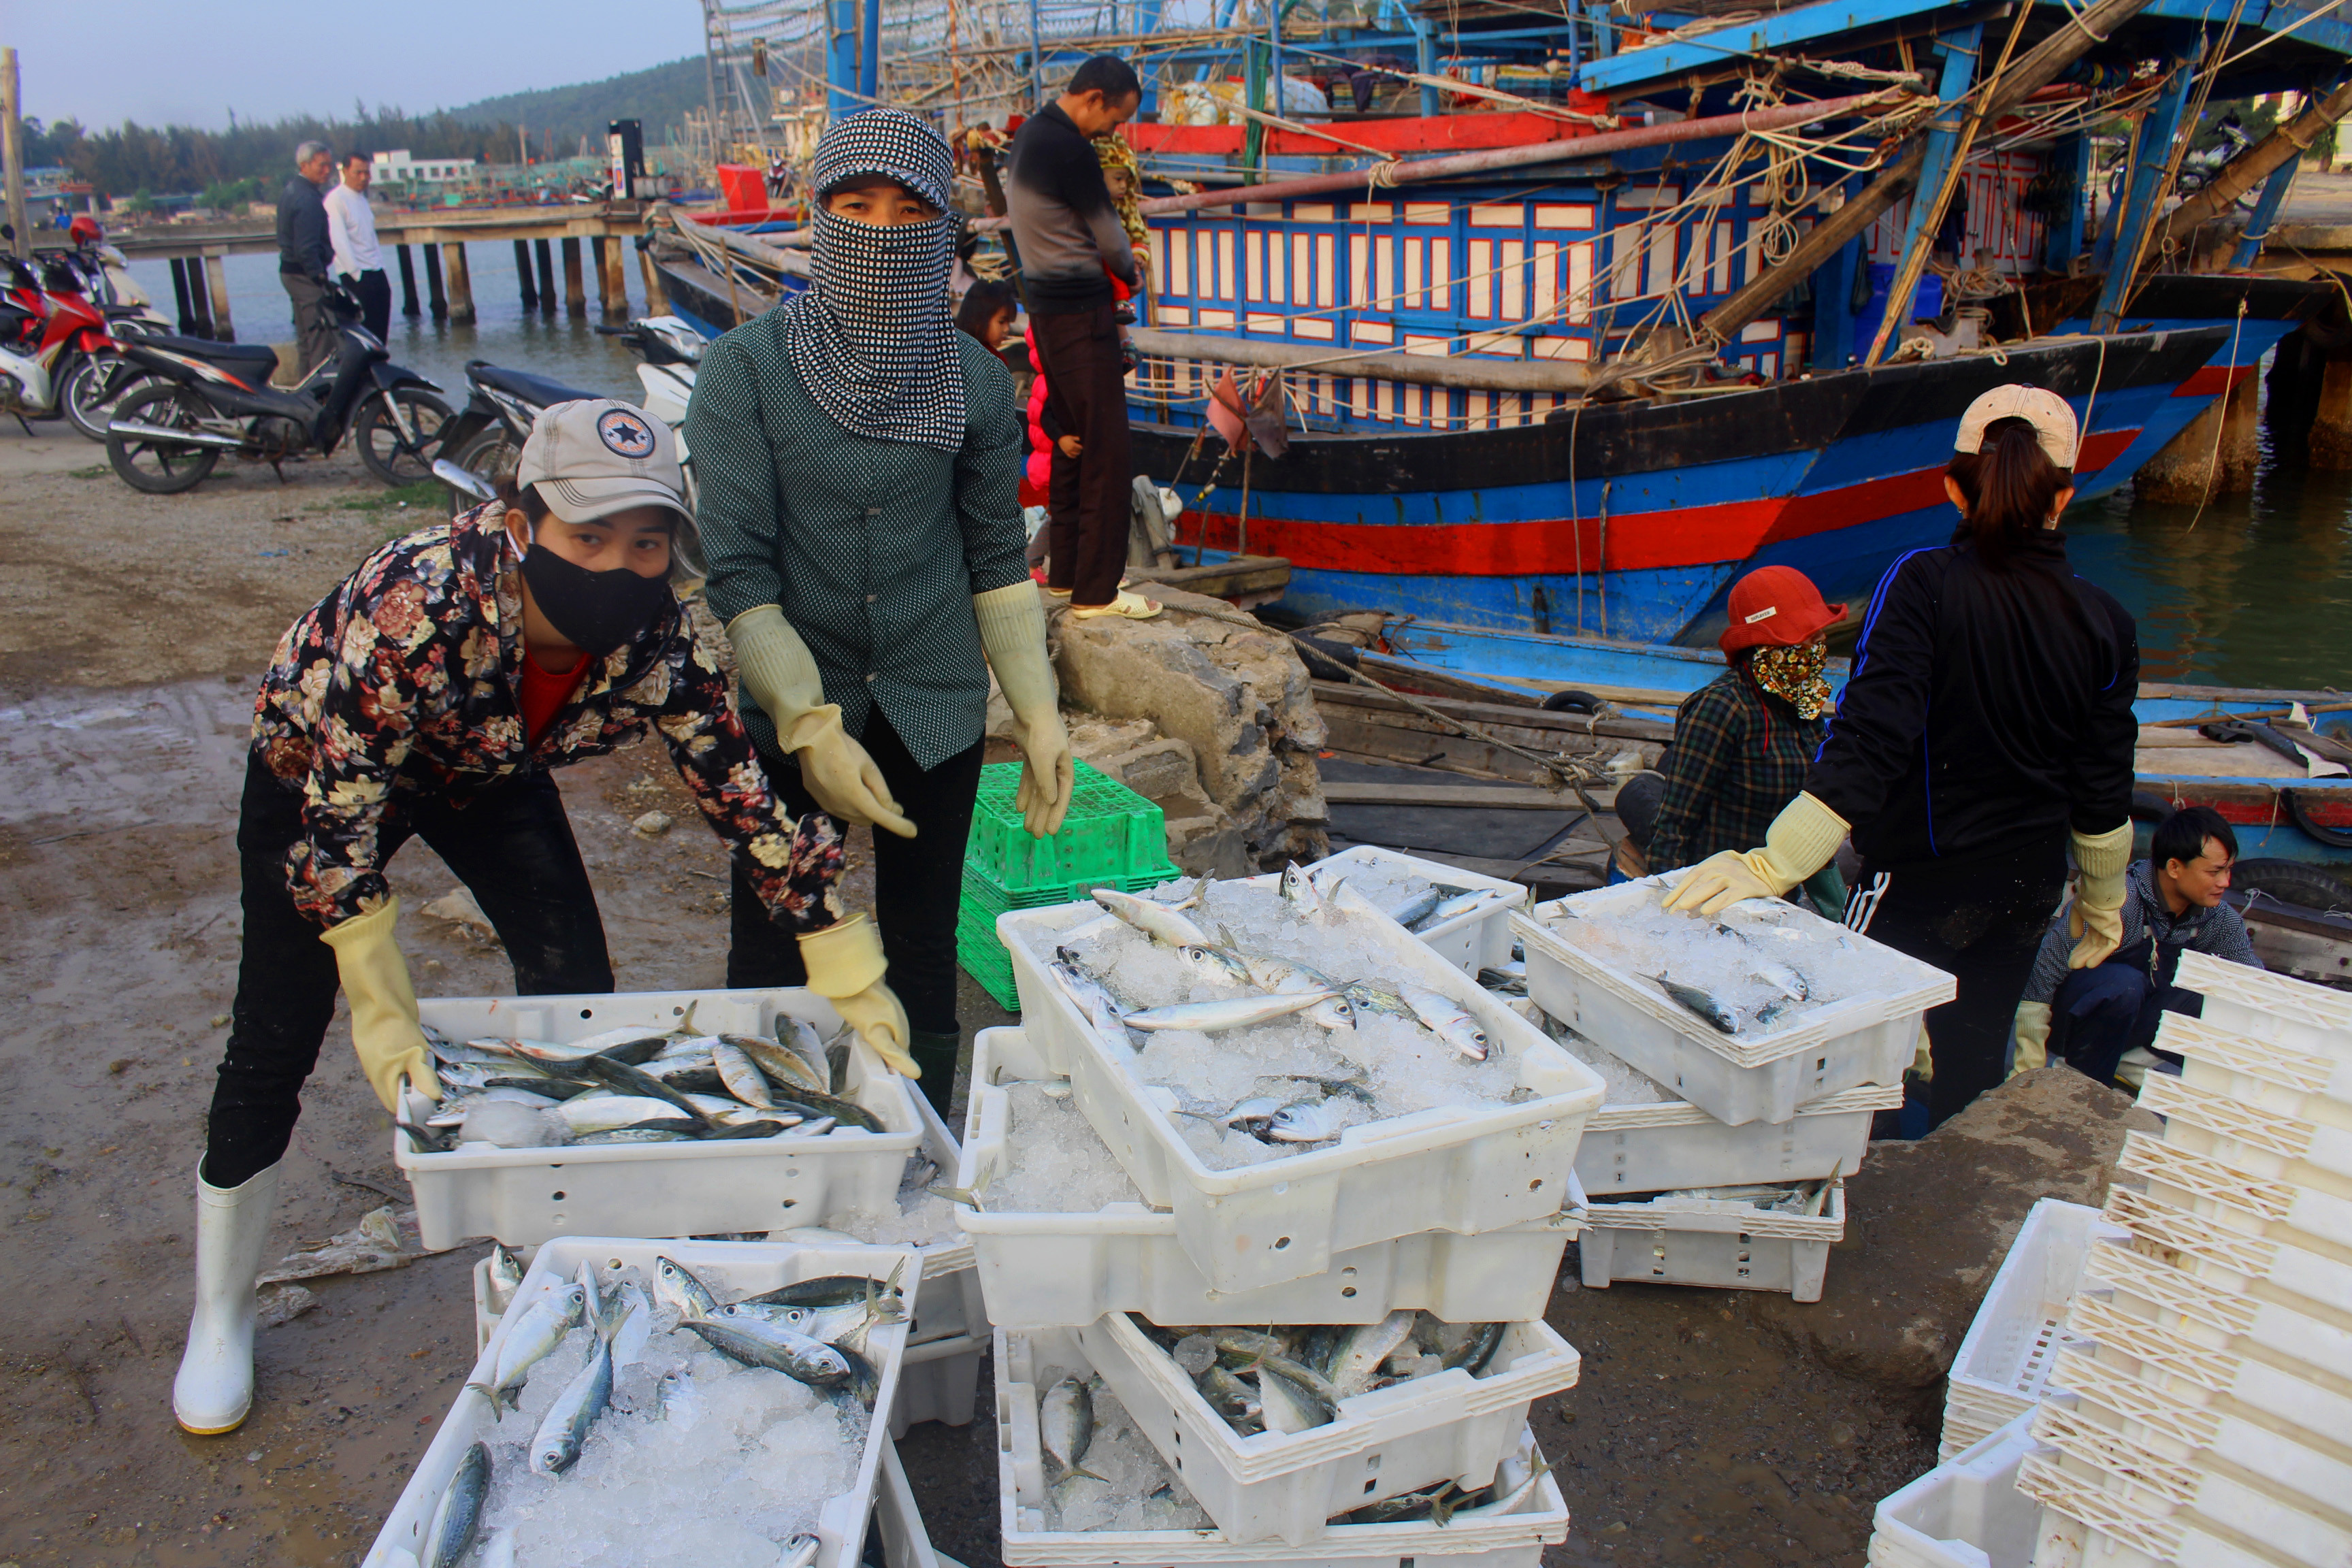 Chiều ngày 31/1 (tức mùng 7 Tết Canh Tý),  nhiều tàu cá nghề lưới vây của ngư dân xã Quỳnh Long (Quỳnh Lưu) liên tiếp về cập bến Lạch Quèn trong niềm vui được mùa hải sản. Ảnh: Việt Hùng.